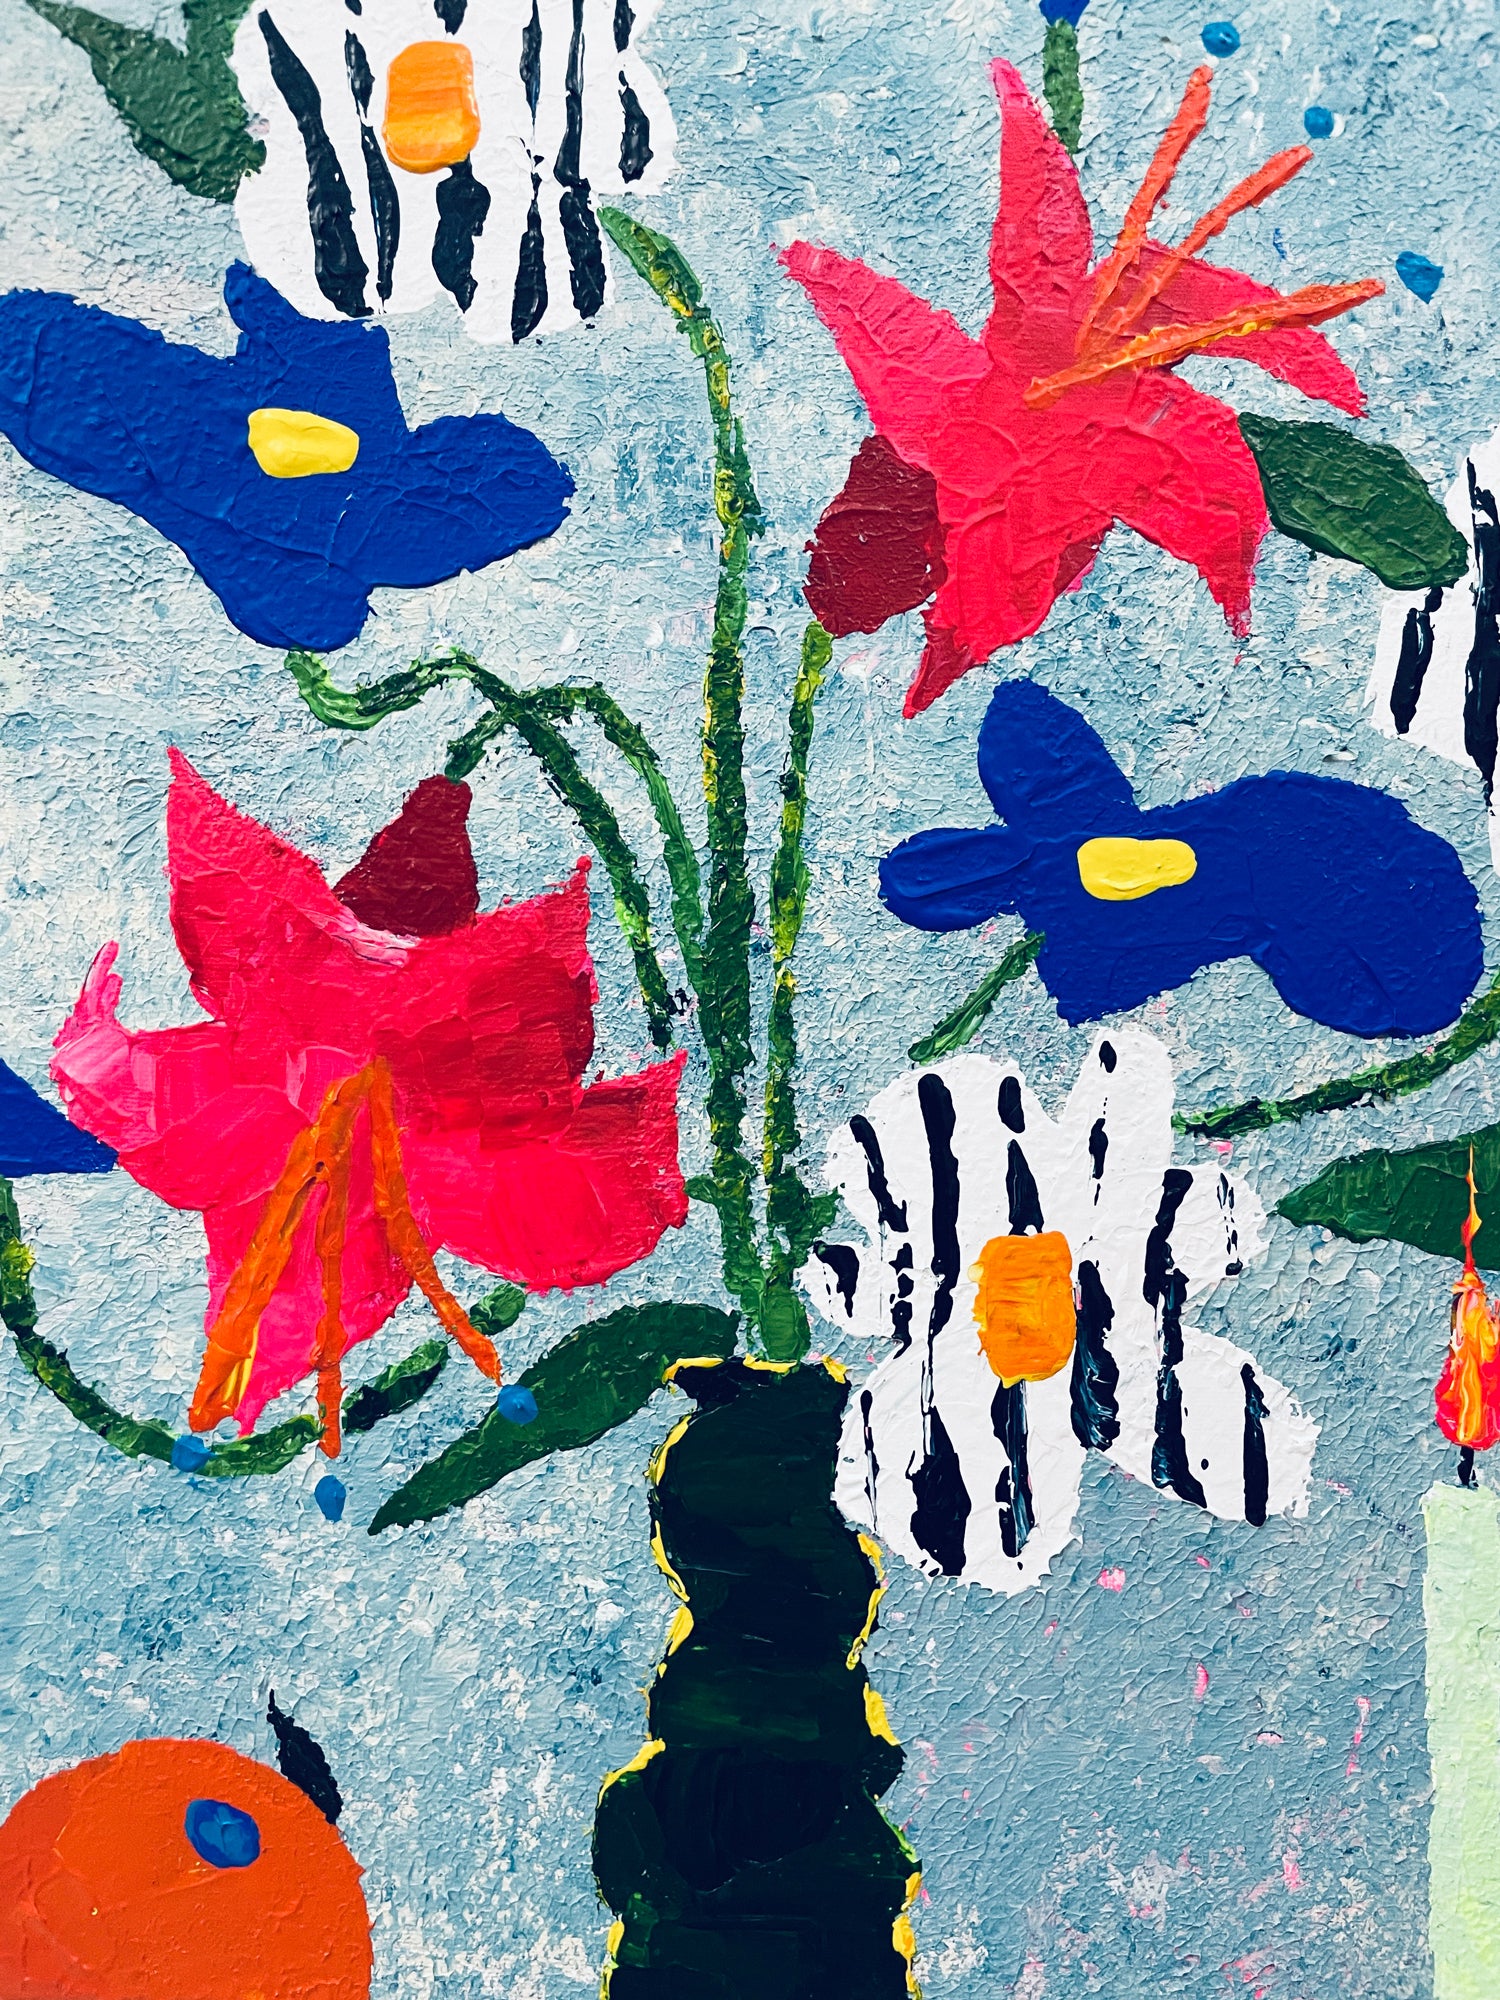 【汐留 パークホテル東京】3月23日 (土) 13:00-16:00 | フラワーペインティングナイフアート (Flower Painting Knife Art at Park Hotel Tokyo)